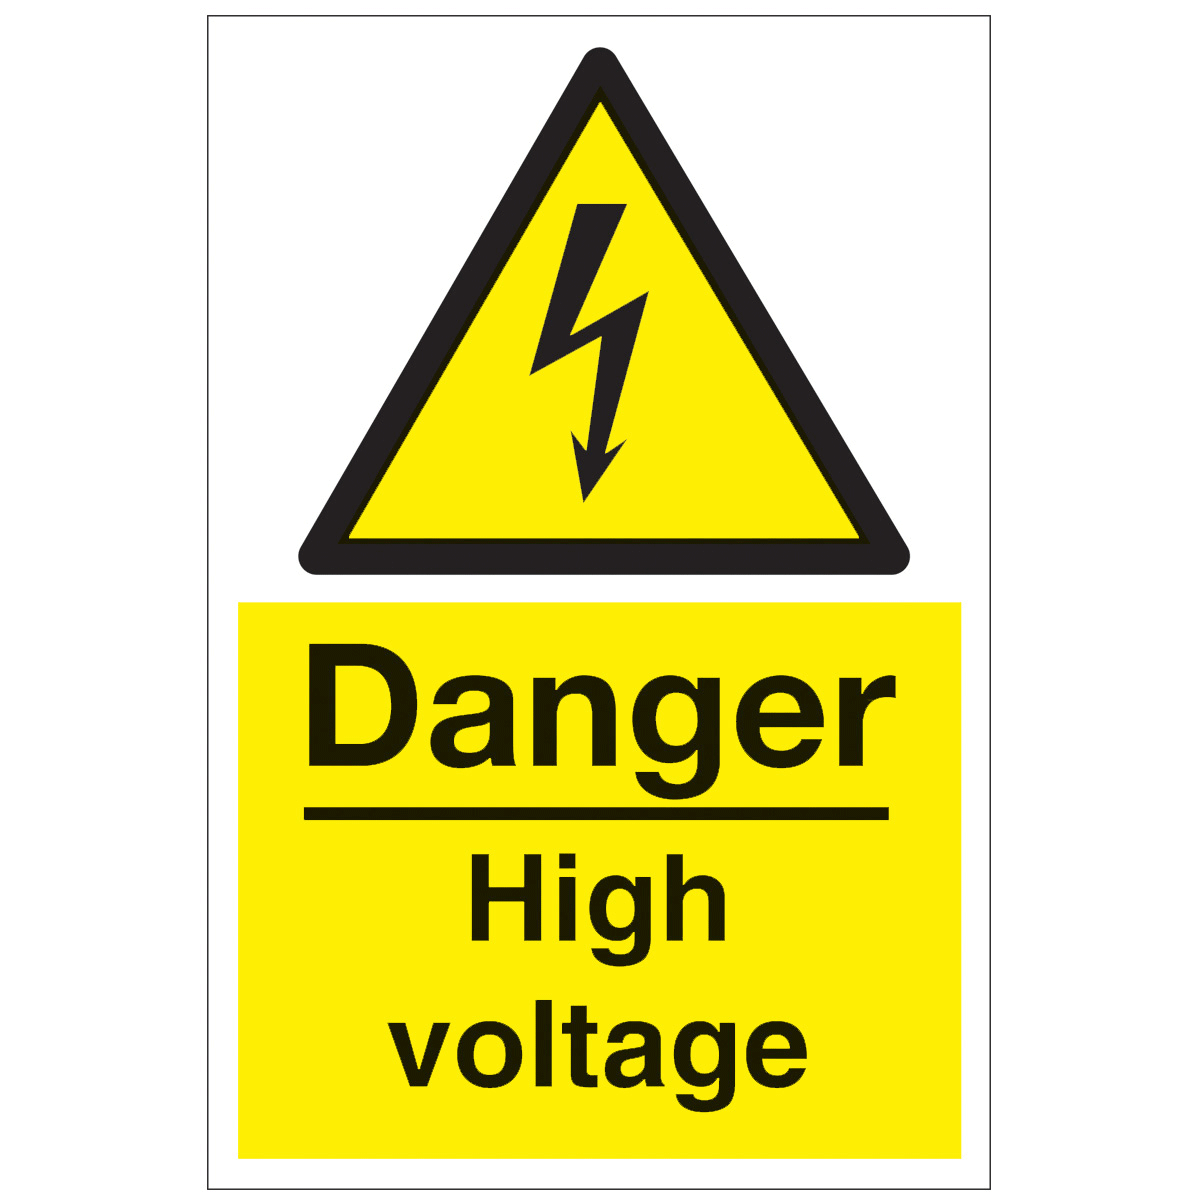 Danger High Voltage Safety Sign - Hazard & Warning Sign from BiGDUG UK